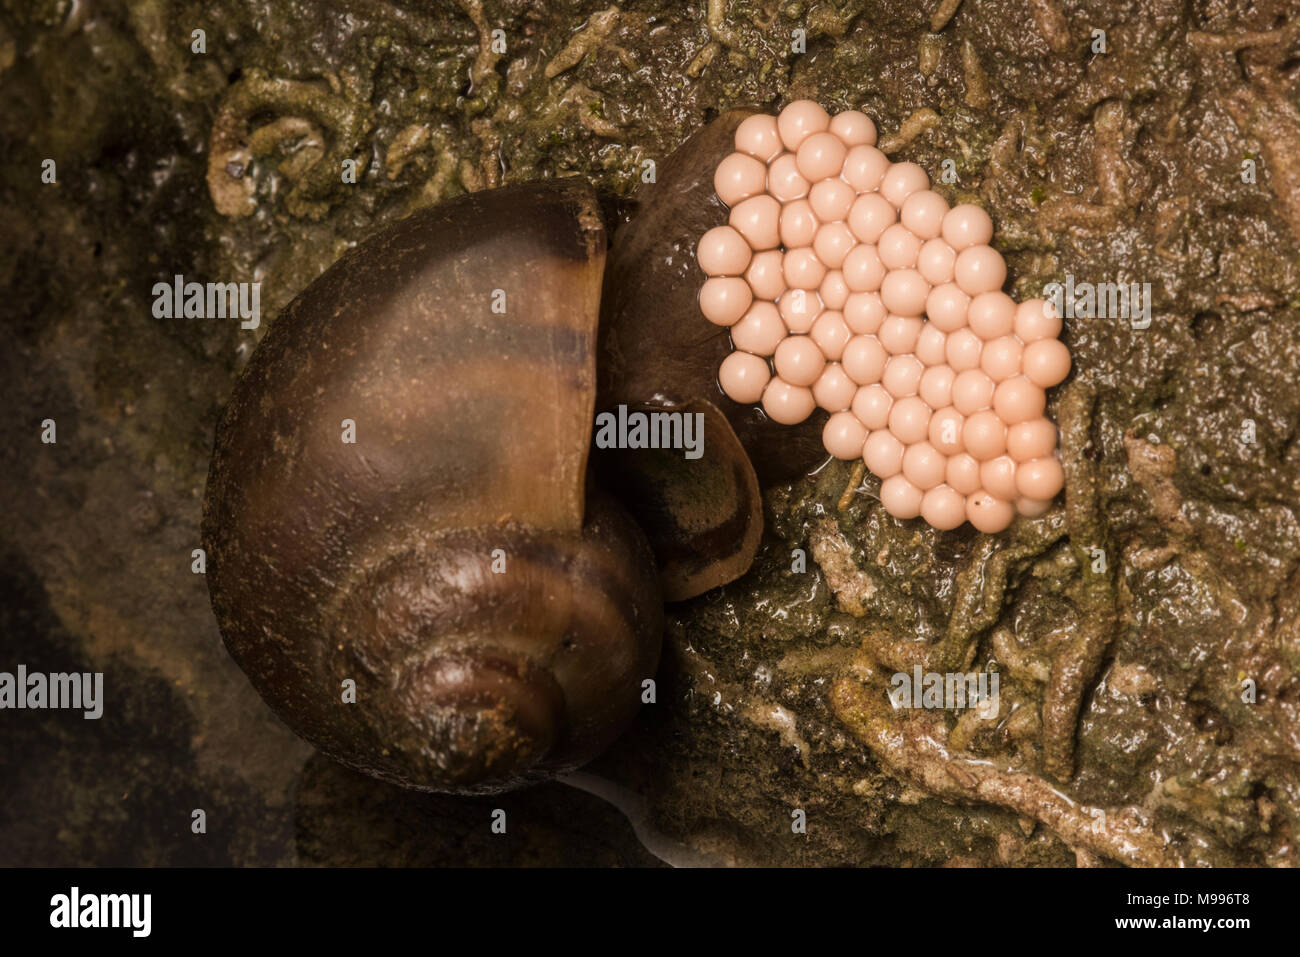 Un escargot pomme du Pérou en joignant une bande d'œufs à un rocher. Banque D'Images